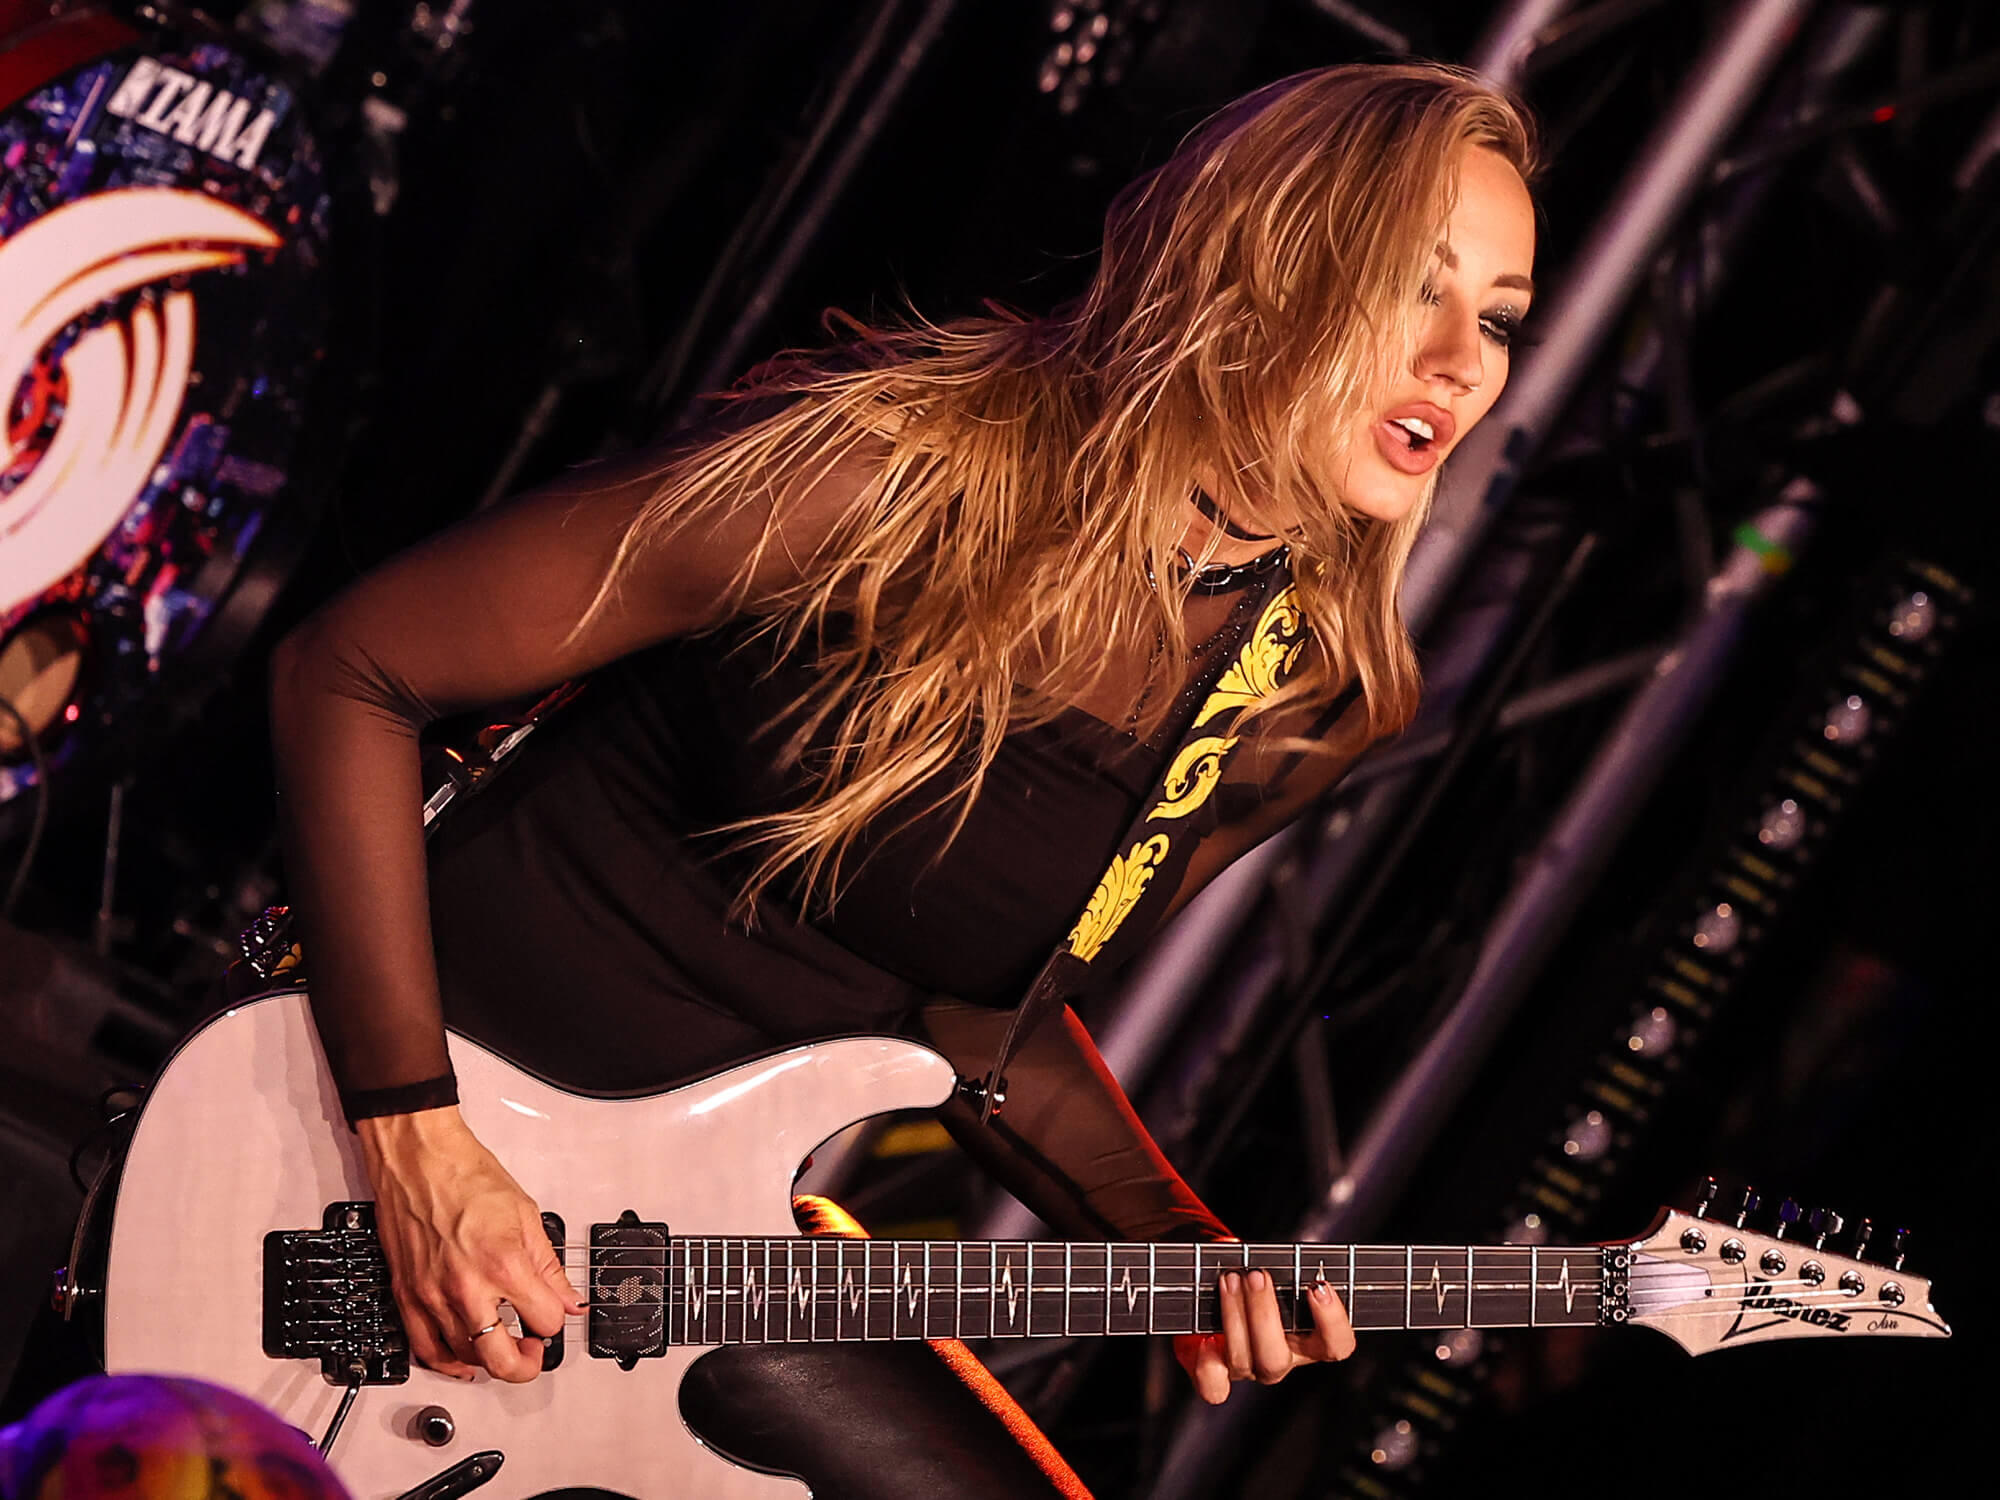 Nita Strauss playing guitar onstage